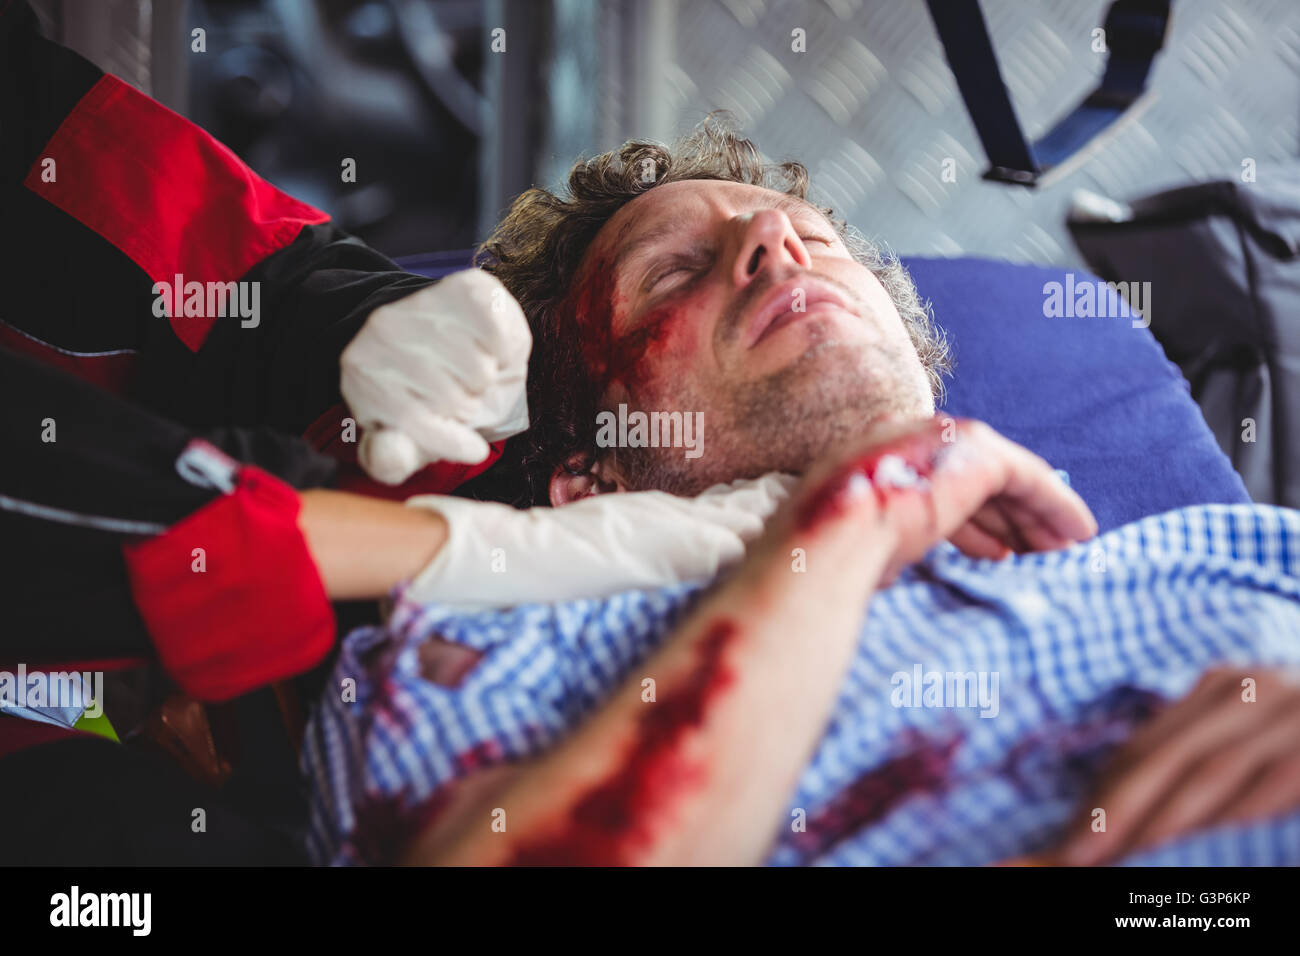 Injured man being taken care of ambulance crew Stock Photo